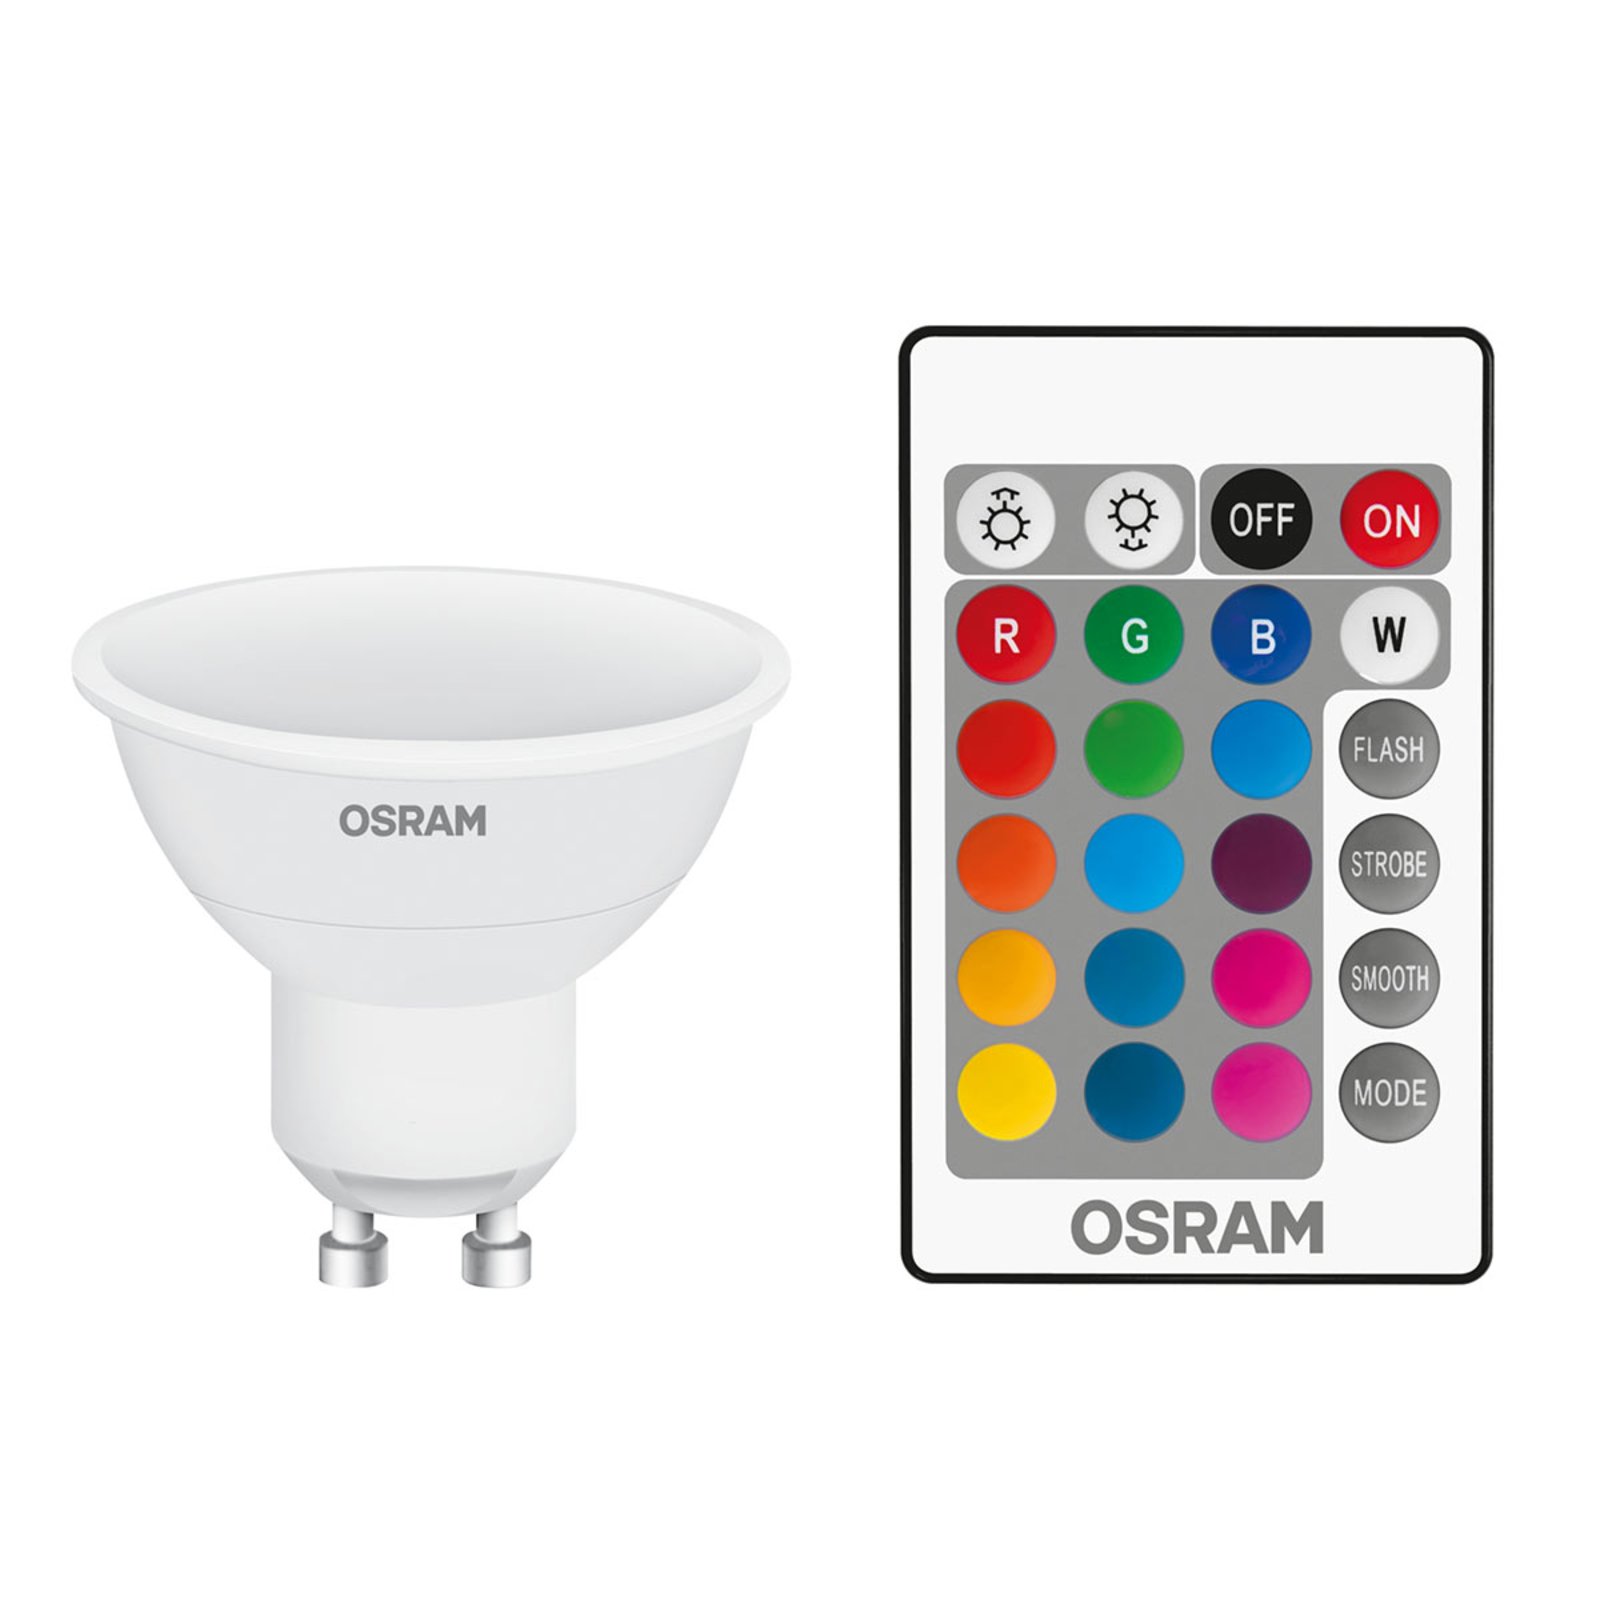 OSRAM LED lamp GU10 4 4,2W Star+ remote control